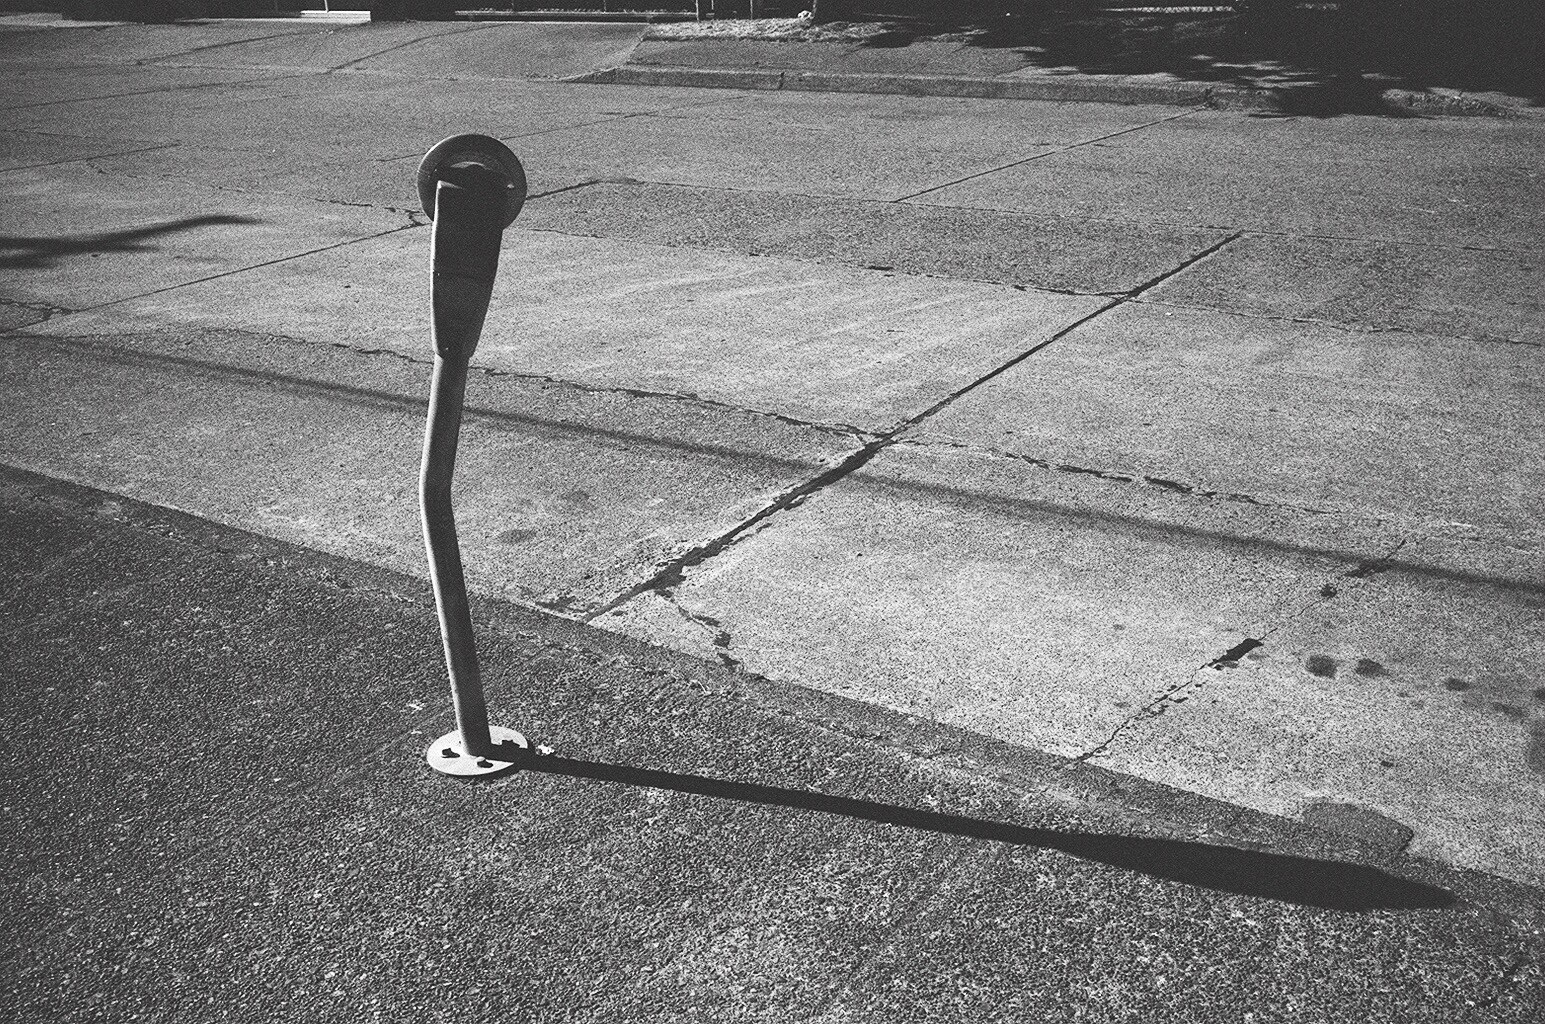 Lone parking meter. Berkeley, 2015